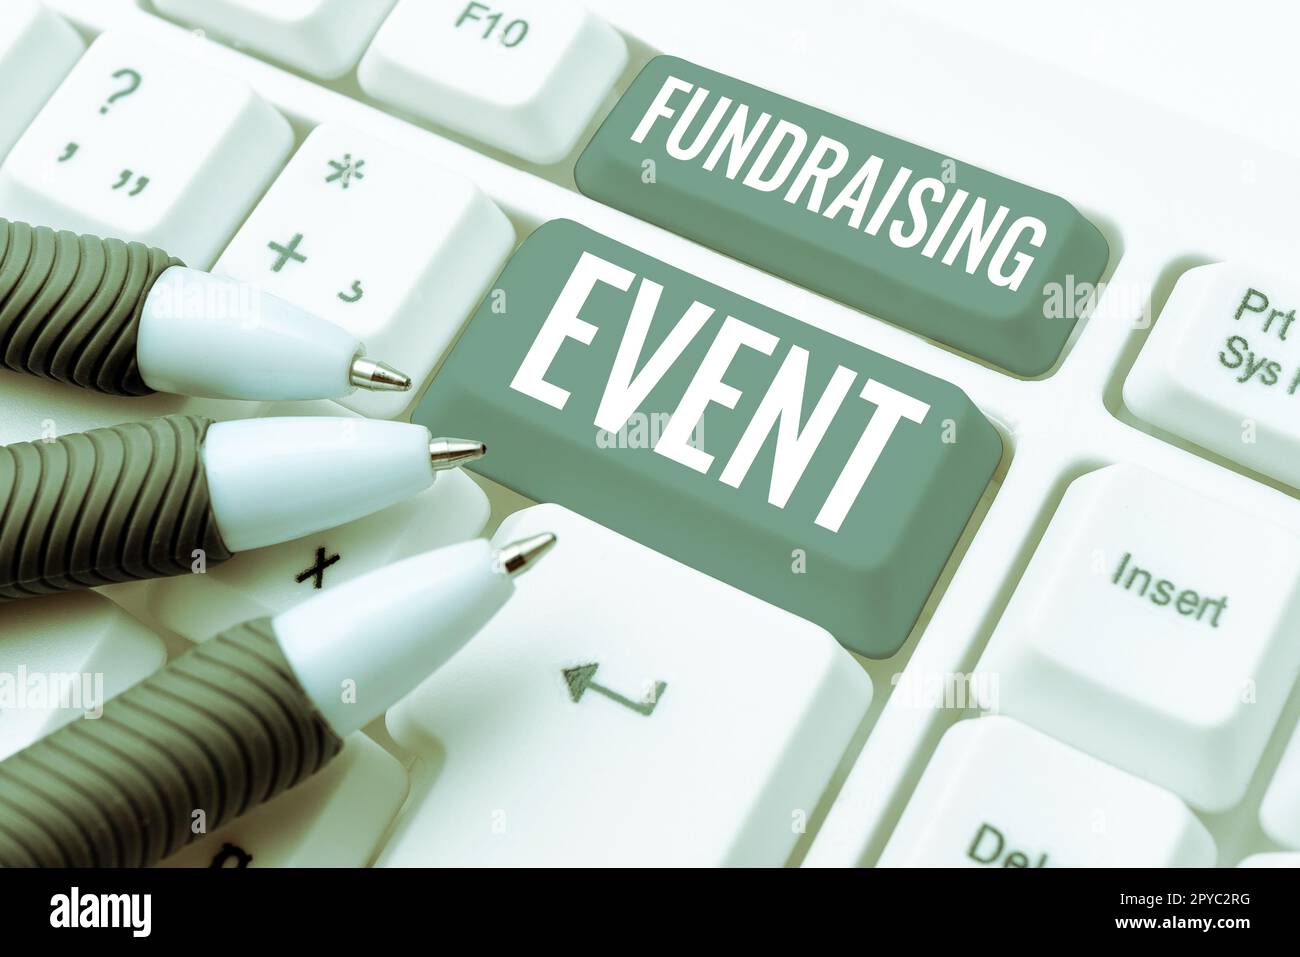 Schreiben mit Anzeige des Textes „Fundraising Event“. Geschäftsidee-Kampagne, deren Zweck es ist, Geld für eine Sache zu sammeln Stockfoto